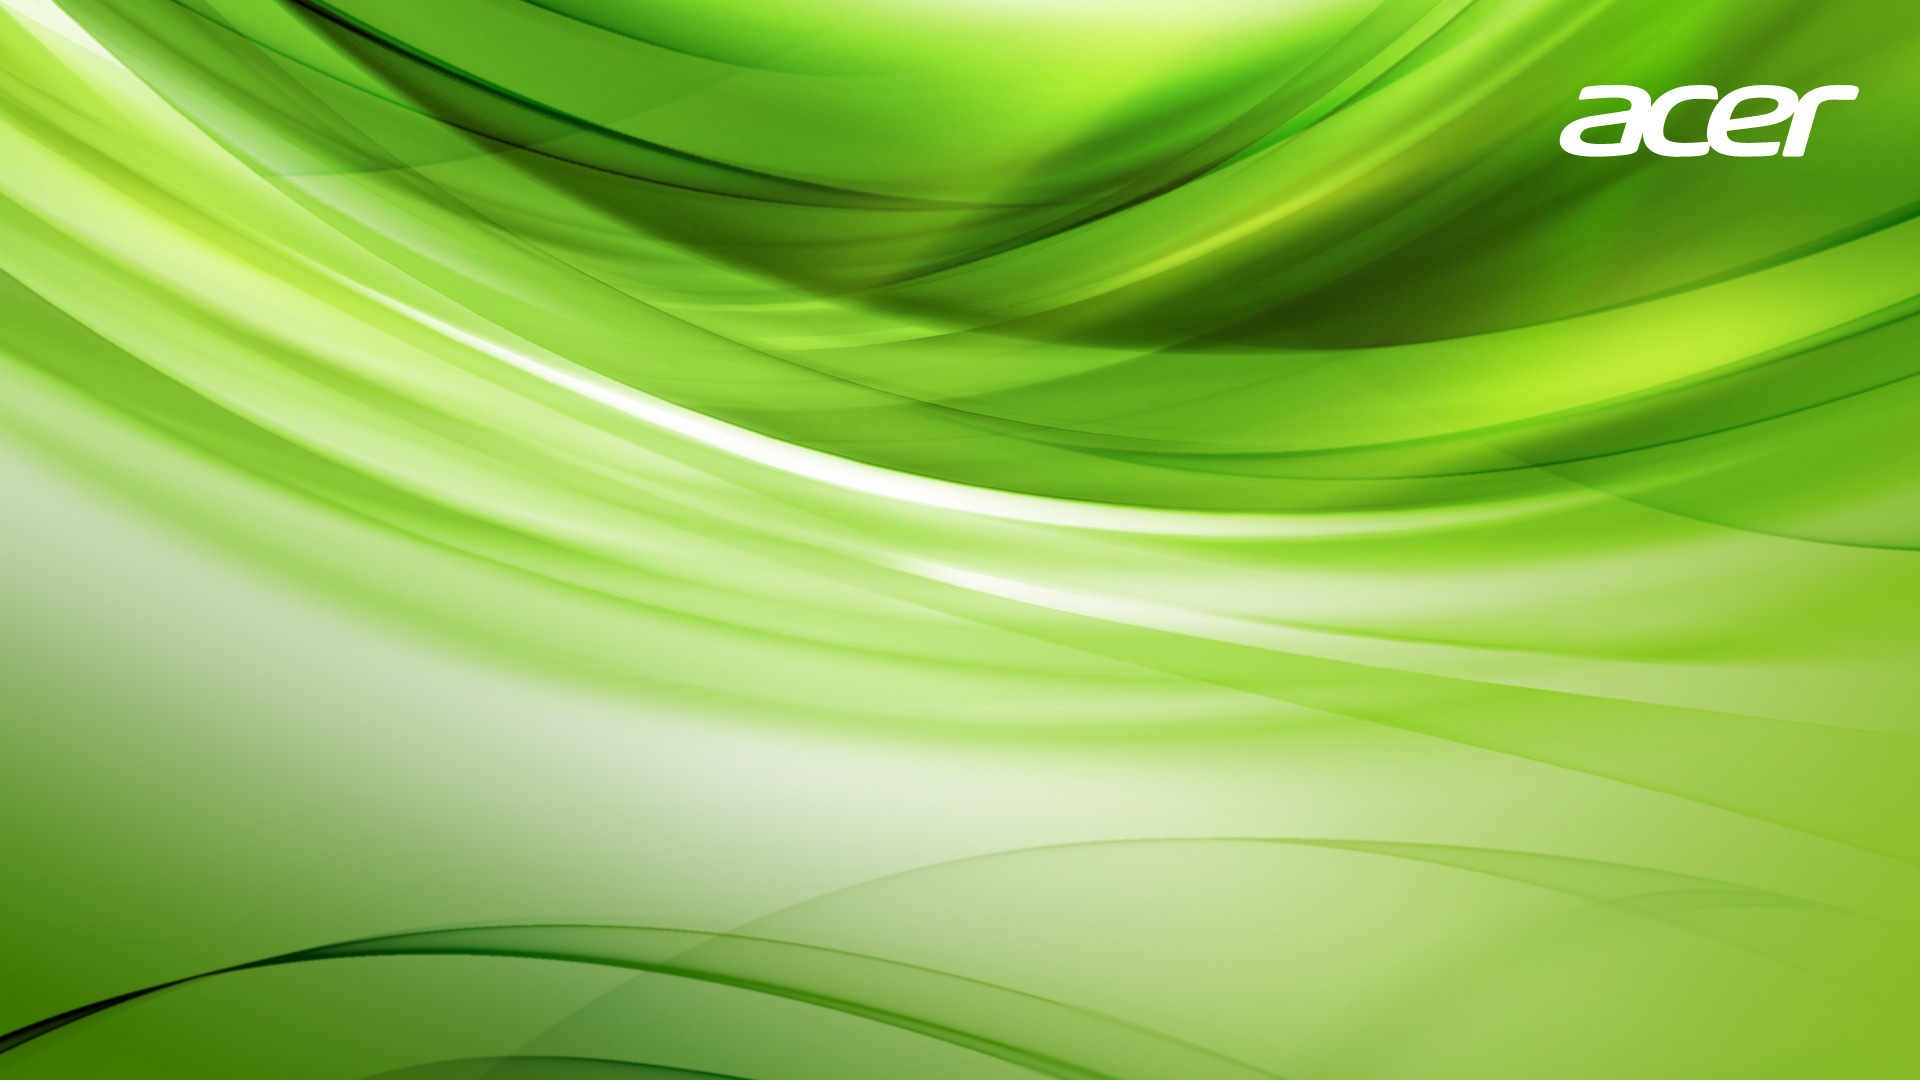 Acer Dekstop Green Wallpapers Download